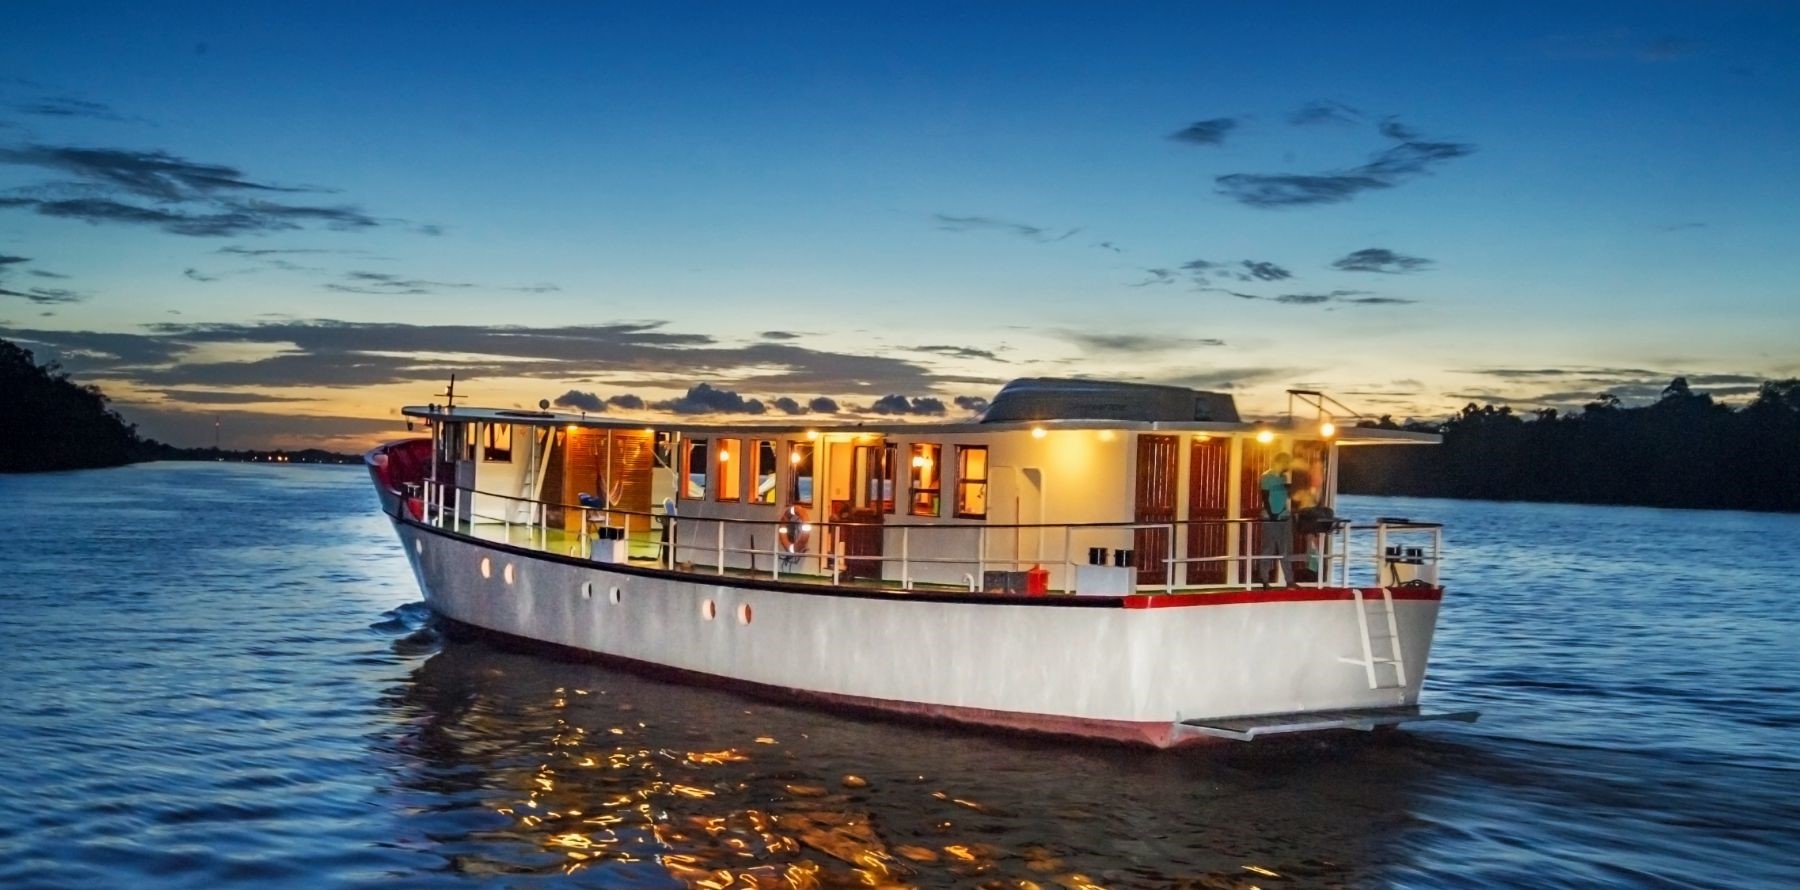 Mi Gudu River cruiser in Suriname